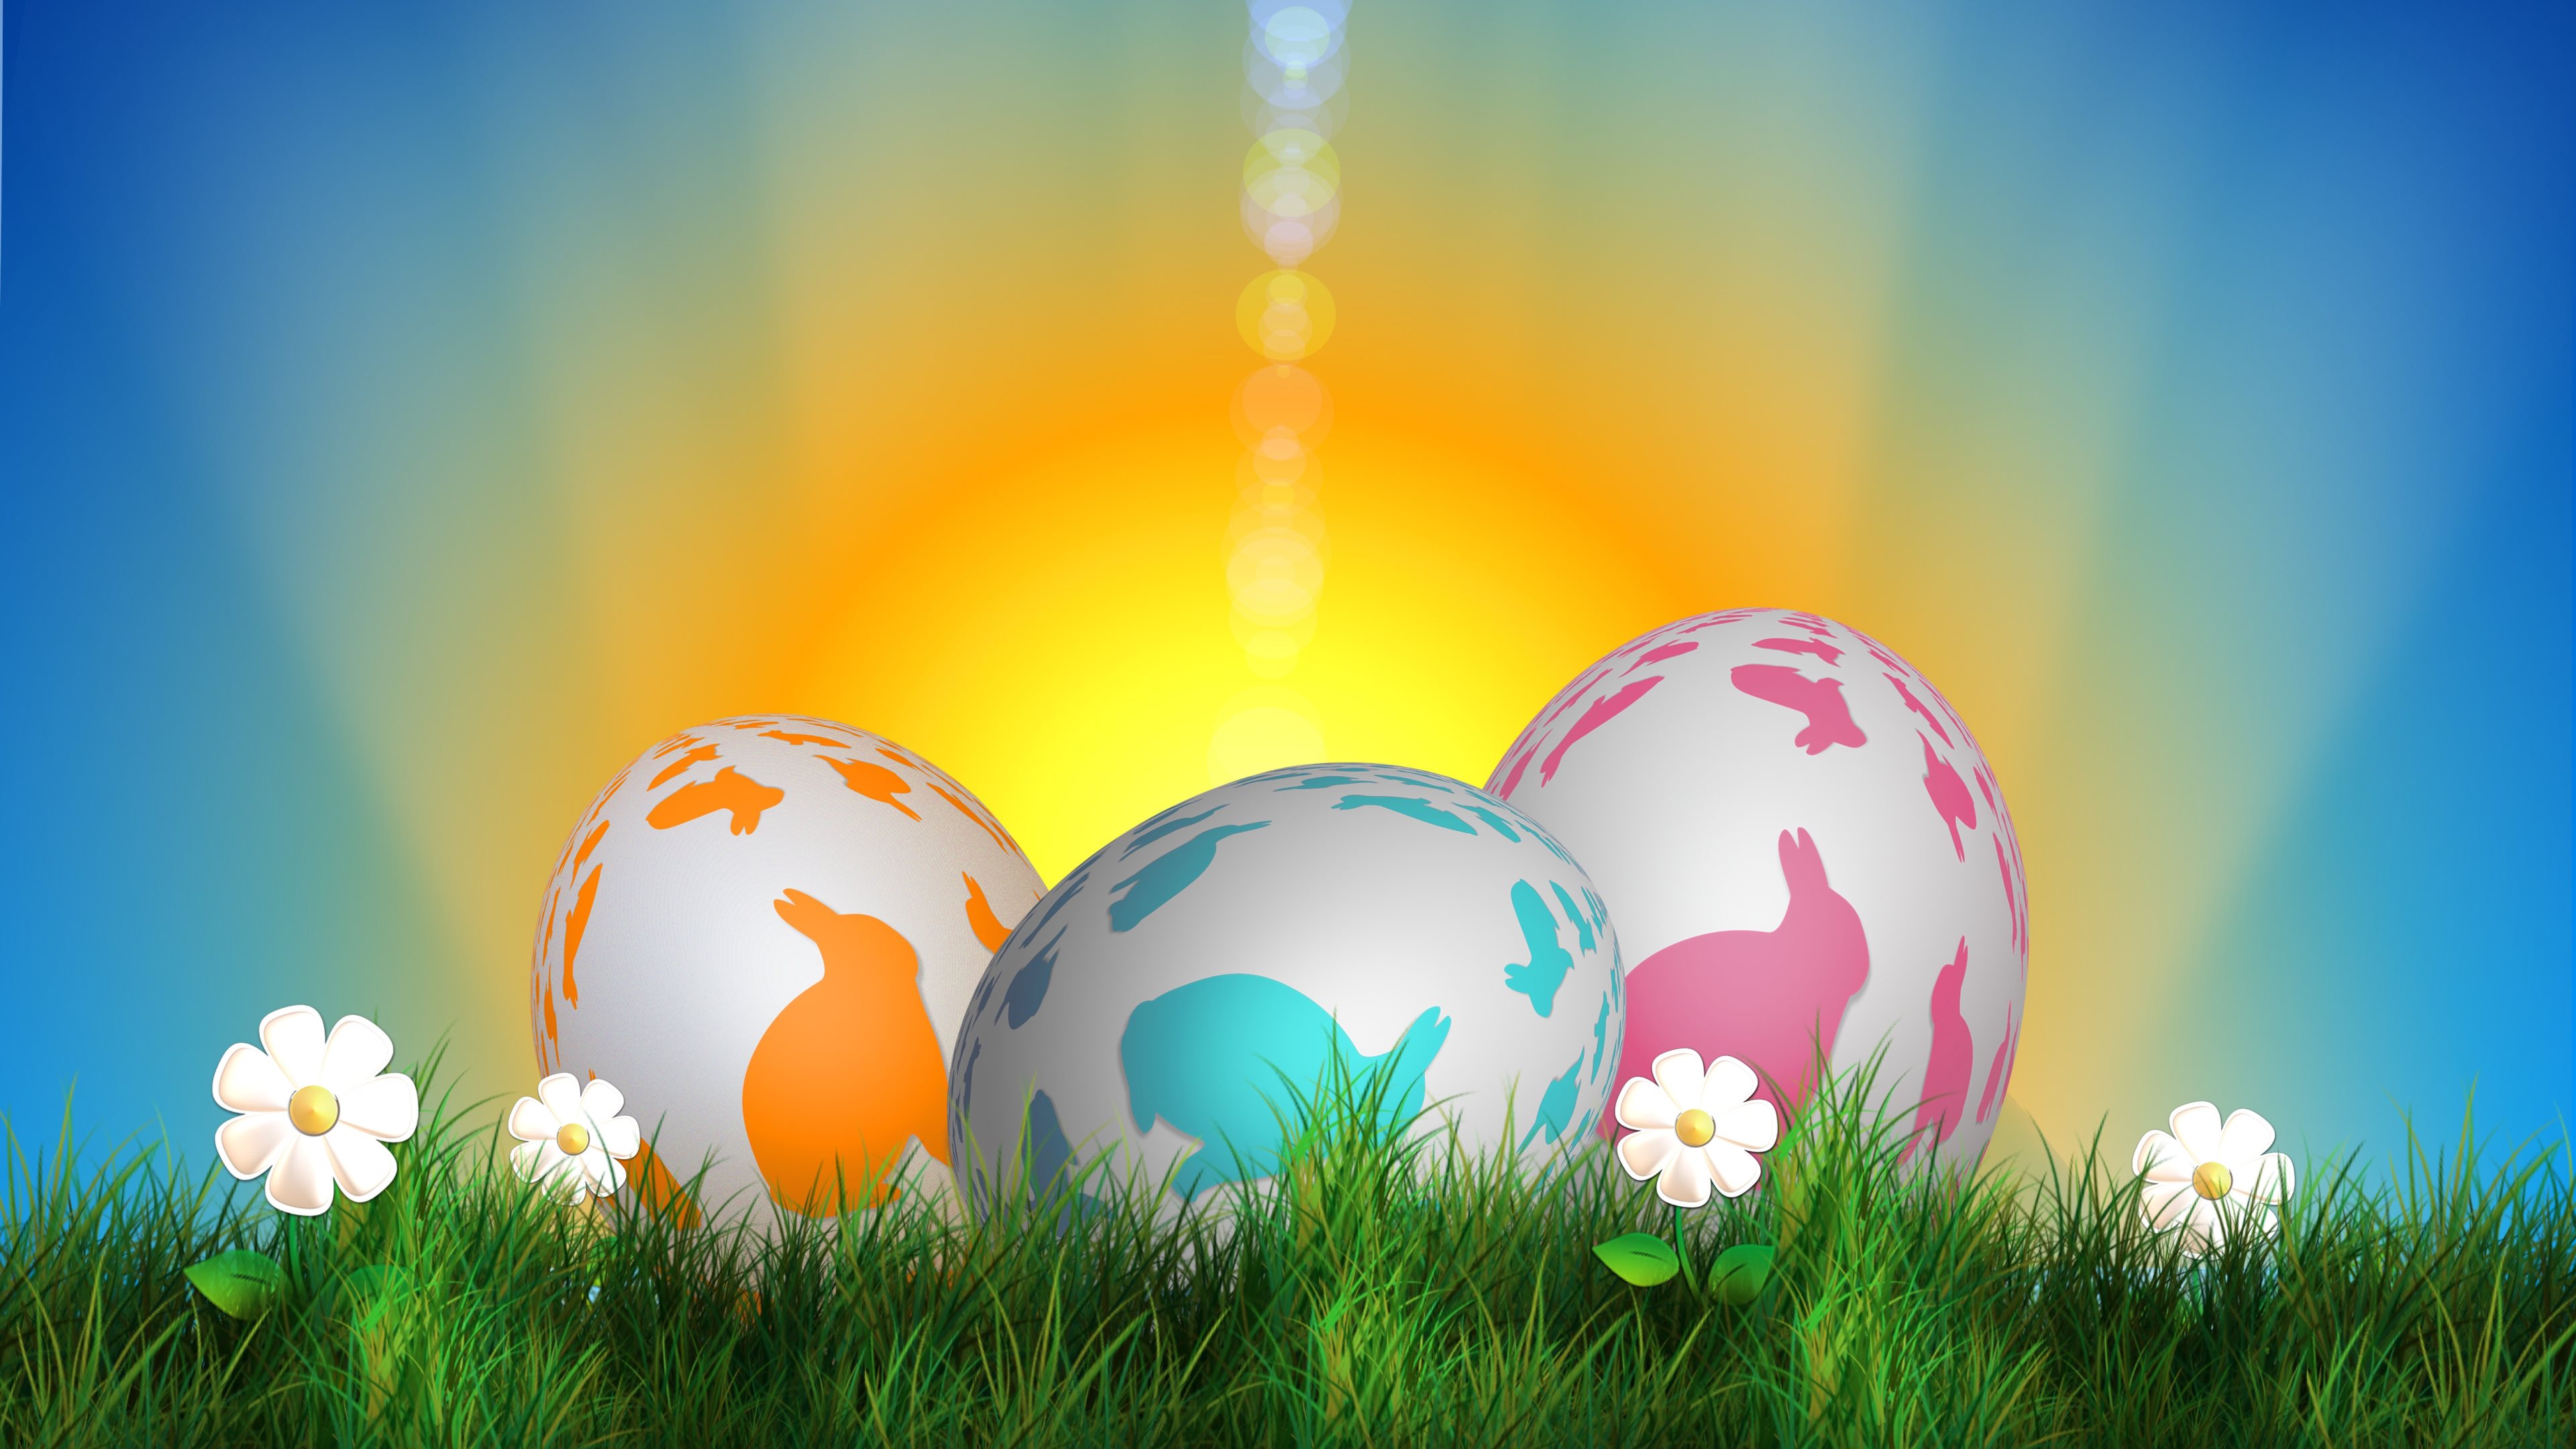 Happy Easter Image For Desktop